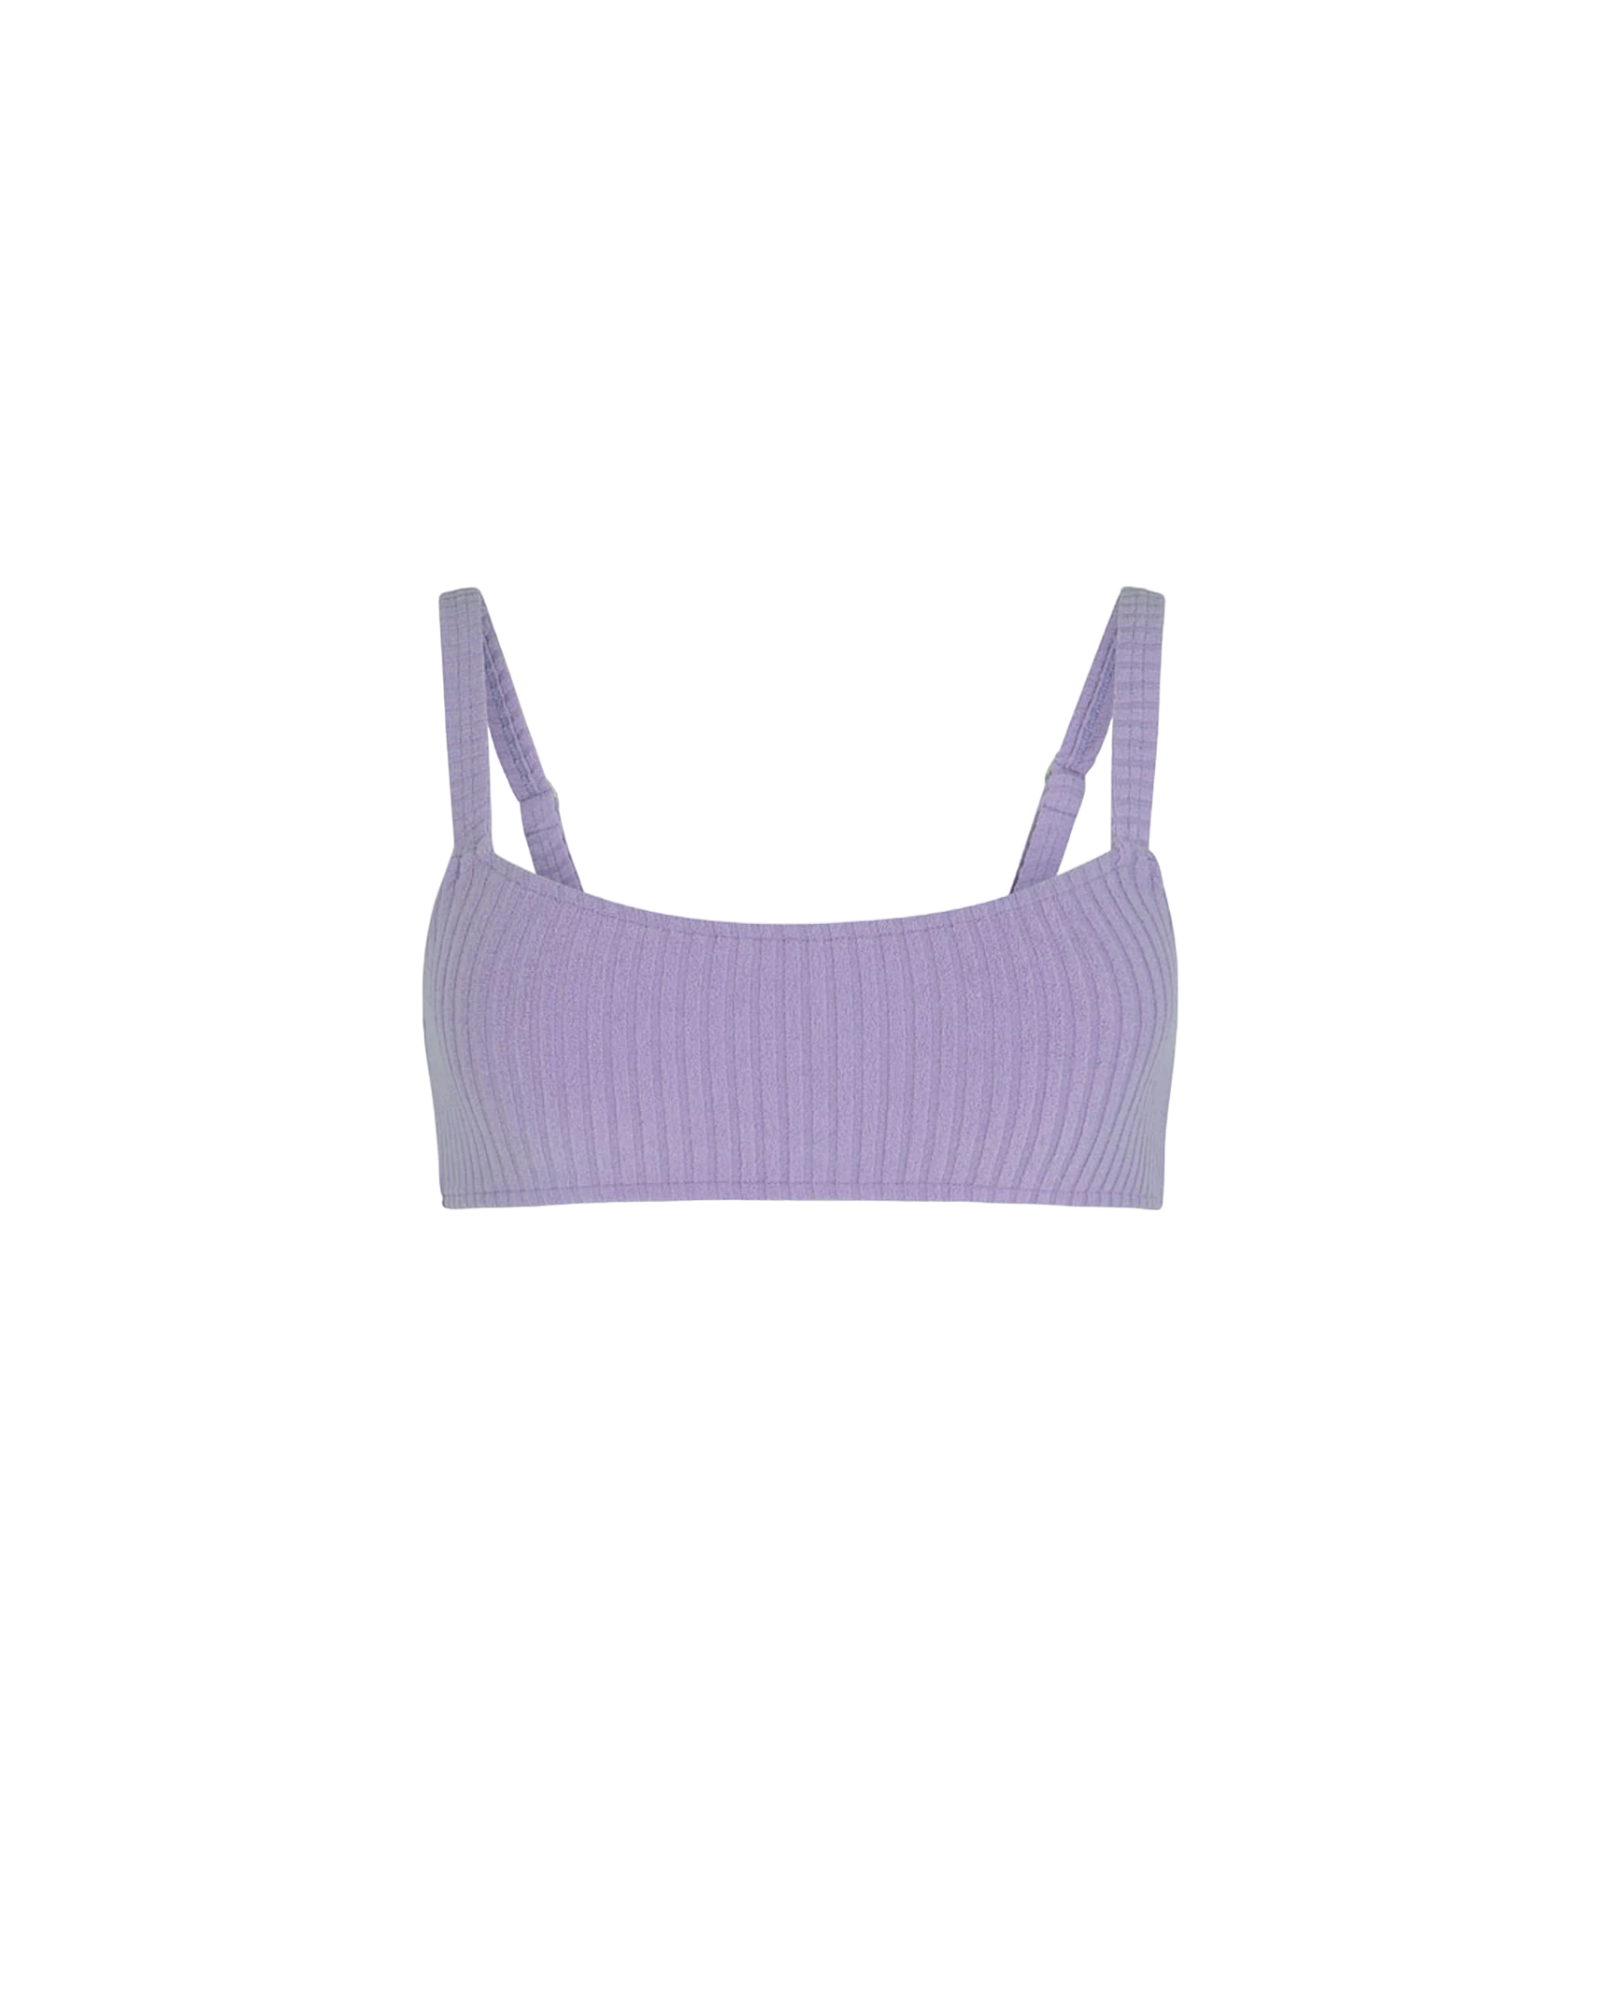 淡紫色繩索毛巾胸罩